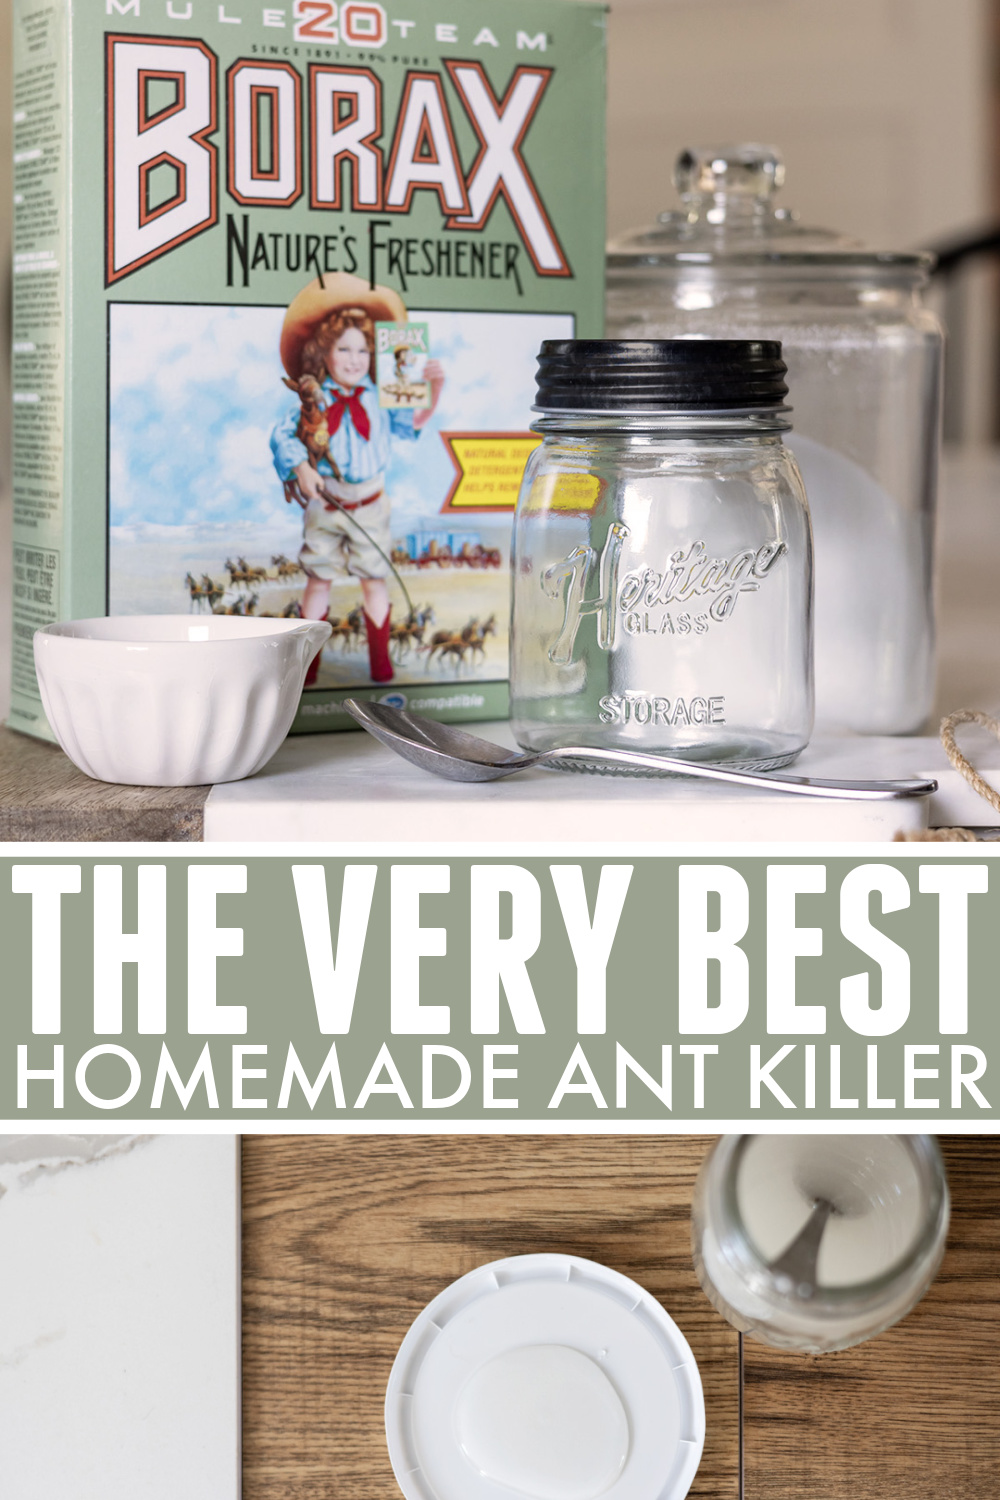 Homemade ant killer main pinterest image